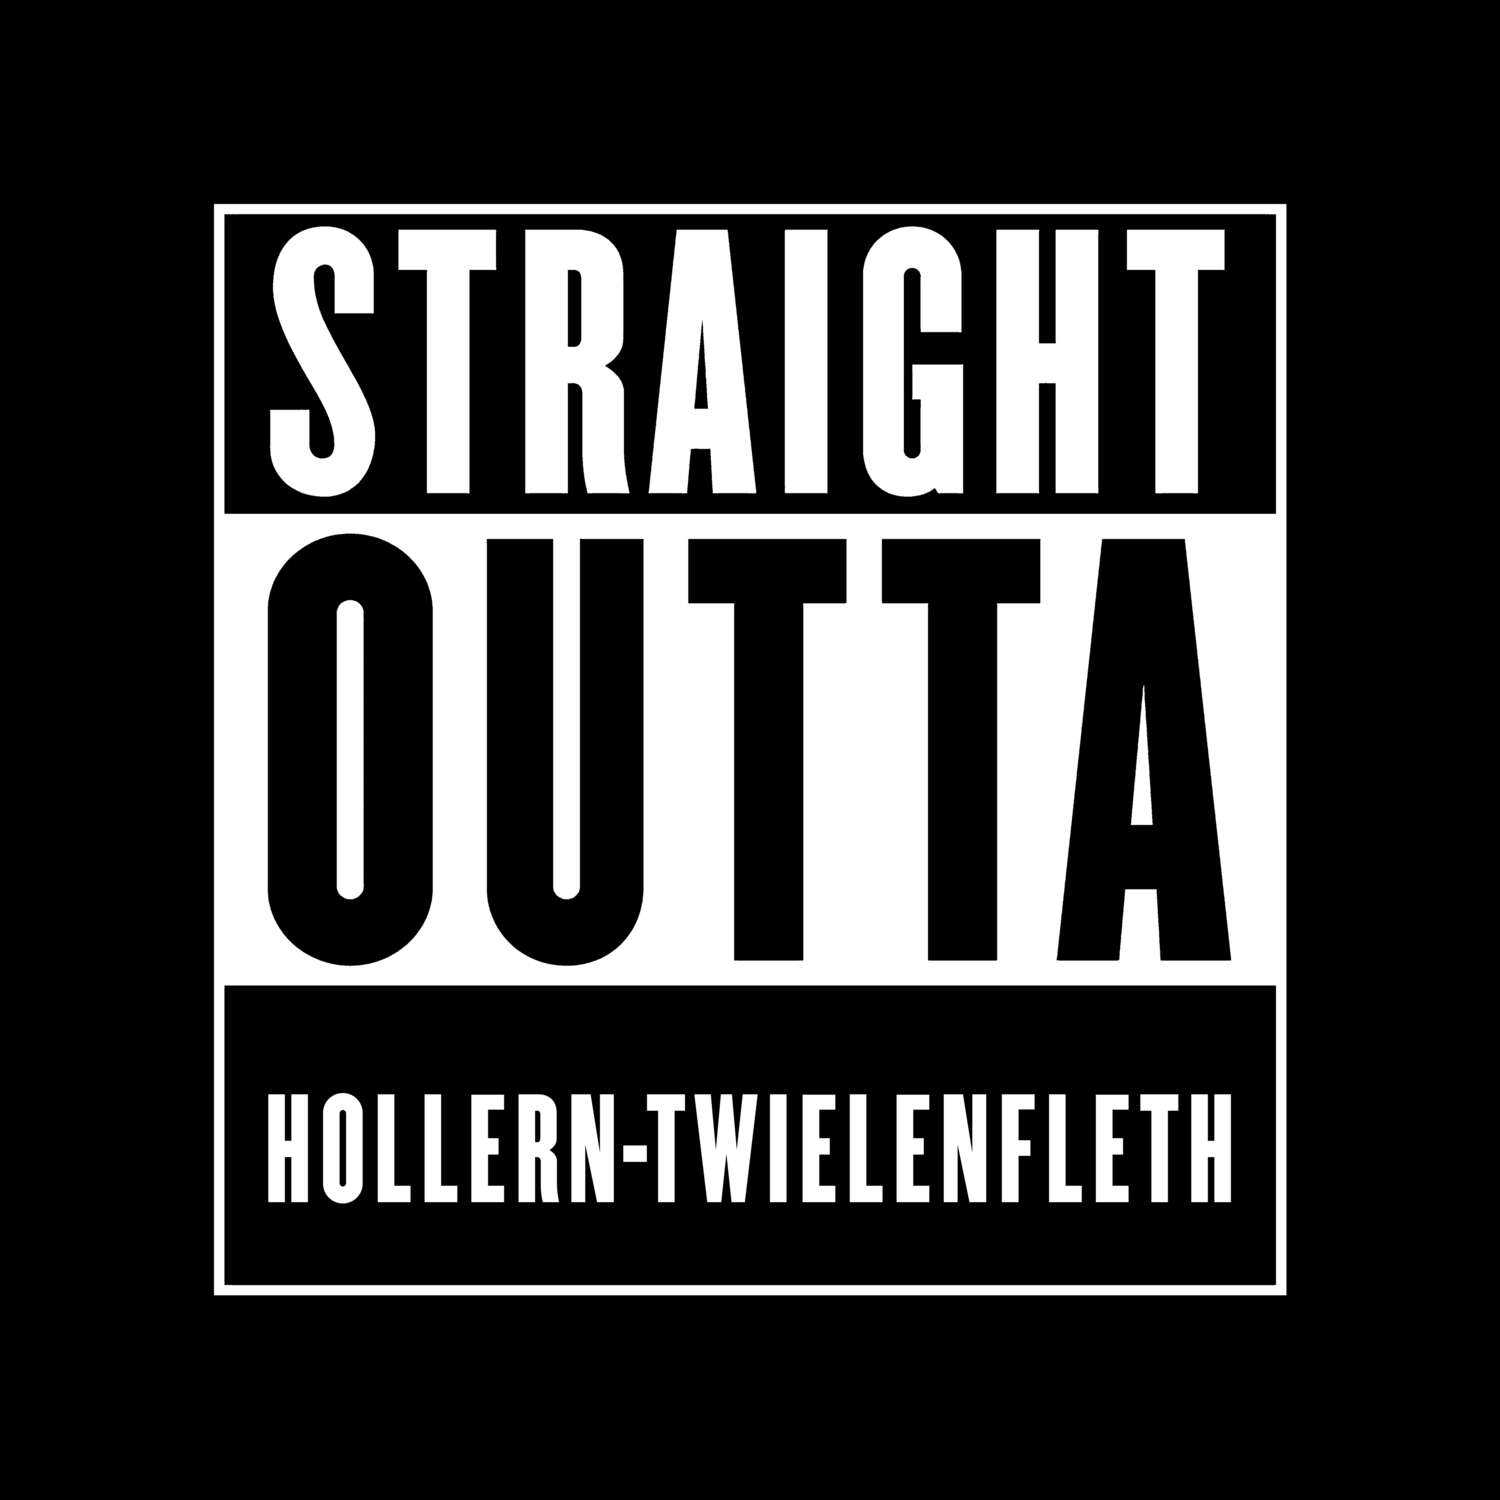 Hollern-Twielenfleth T-Shirt »Straight Outta«